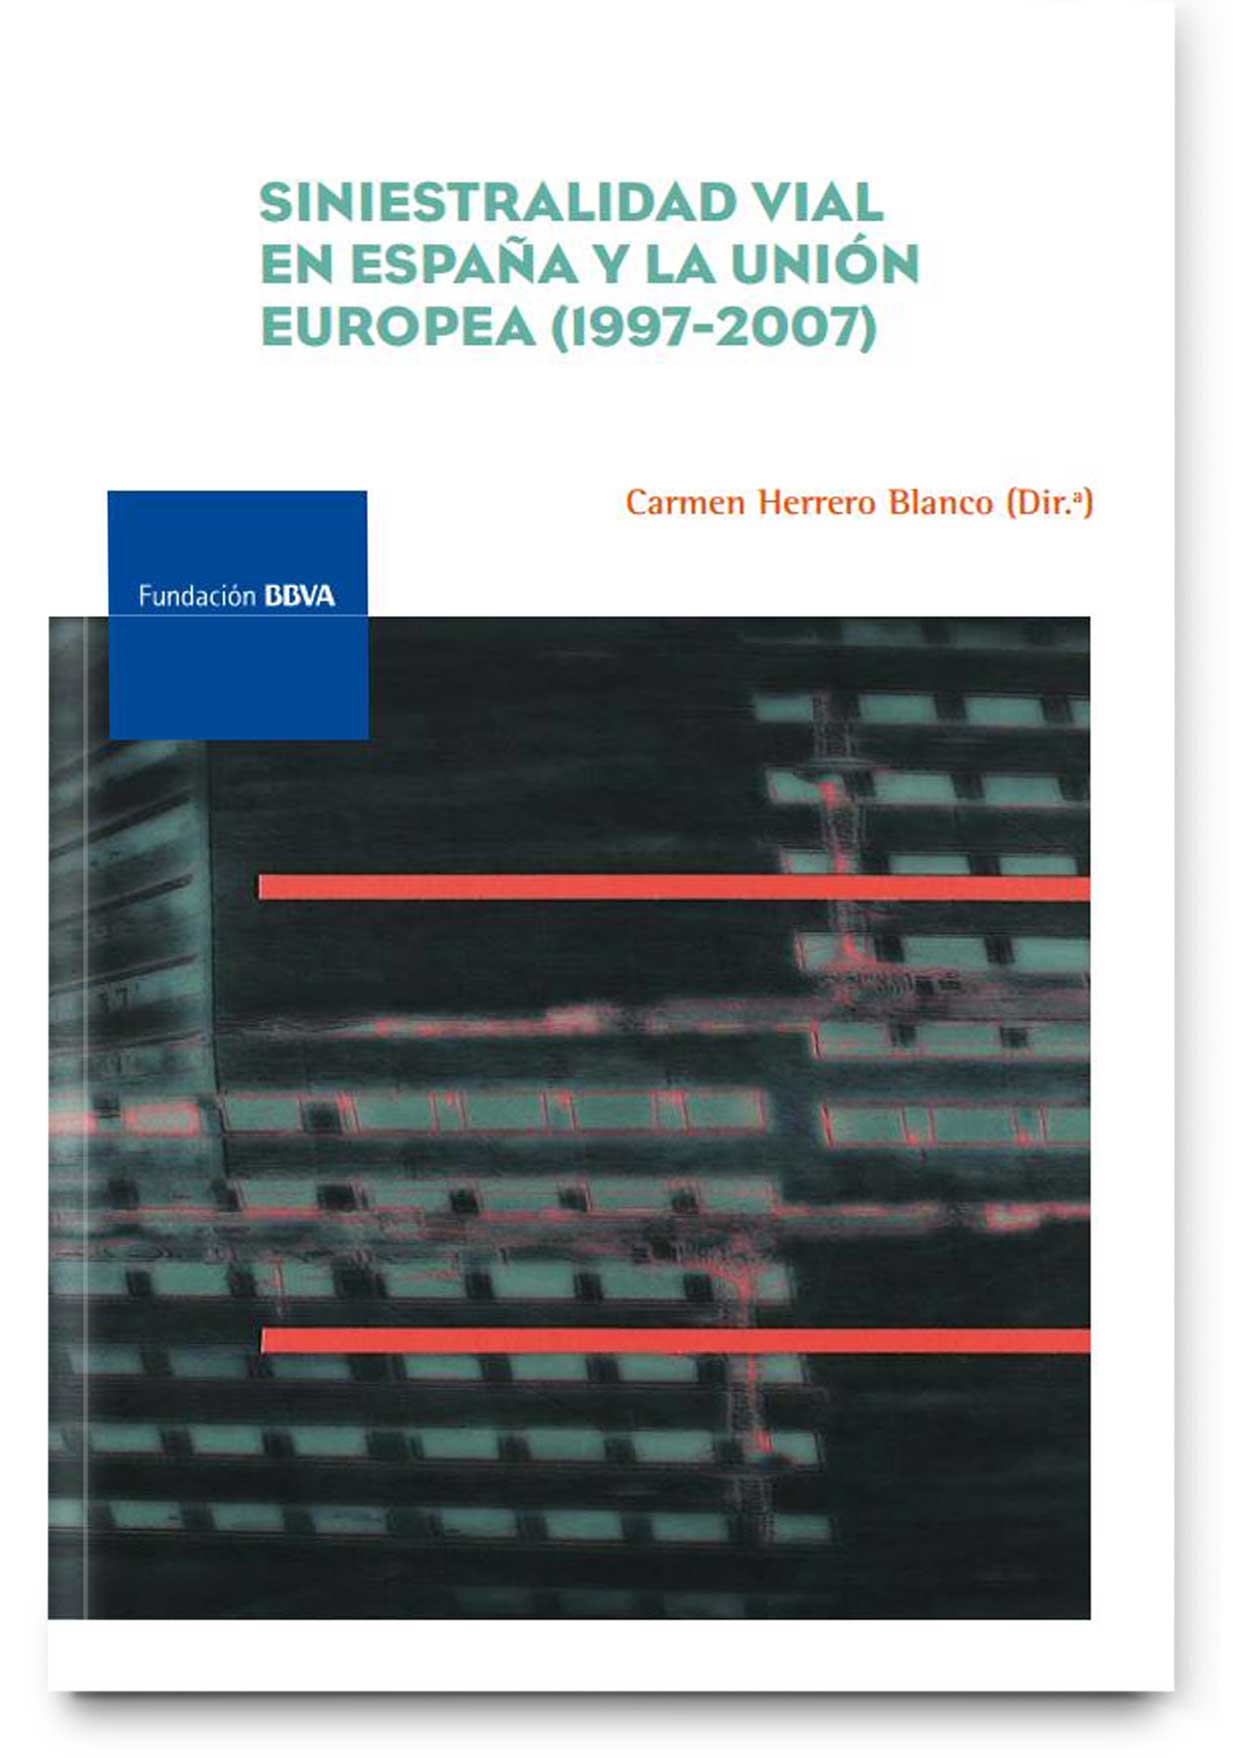 Siniestralidad vial en España y la Unión Europea, 1997-2007